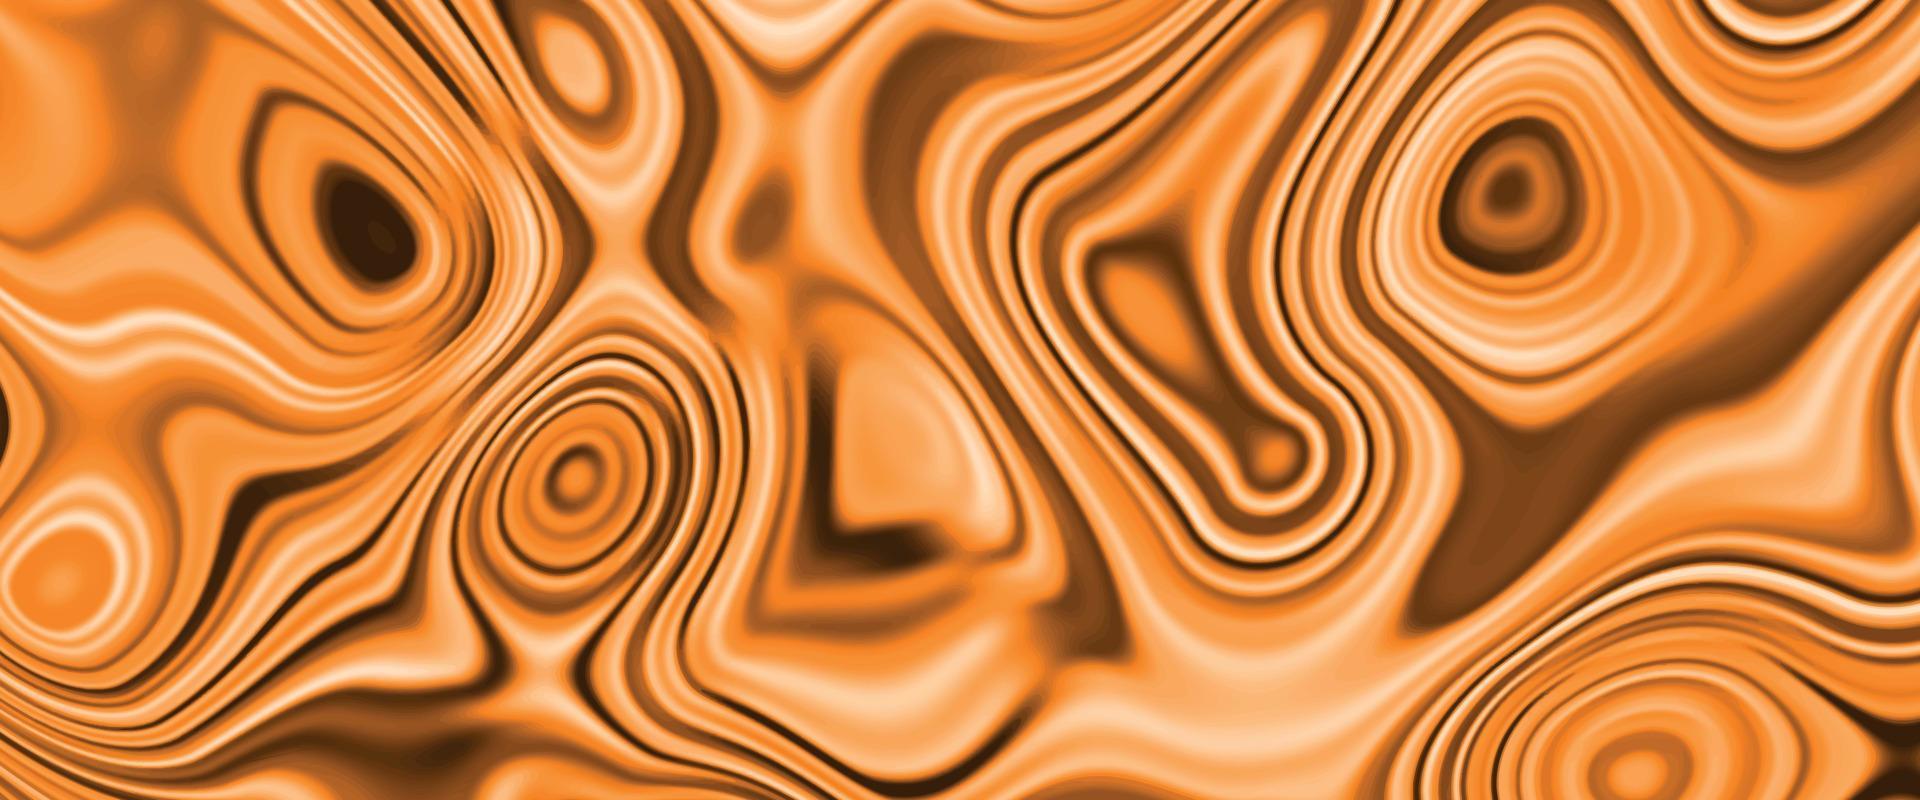 abstrato fluido arte fundo claro cores laranja e douradas. superfície de marmoreio colorido, textura de fundo de ondas fluidas de design de tinta abstrata vibrante. design de azulejos decorativos de parede e piso de mármore. vetor